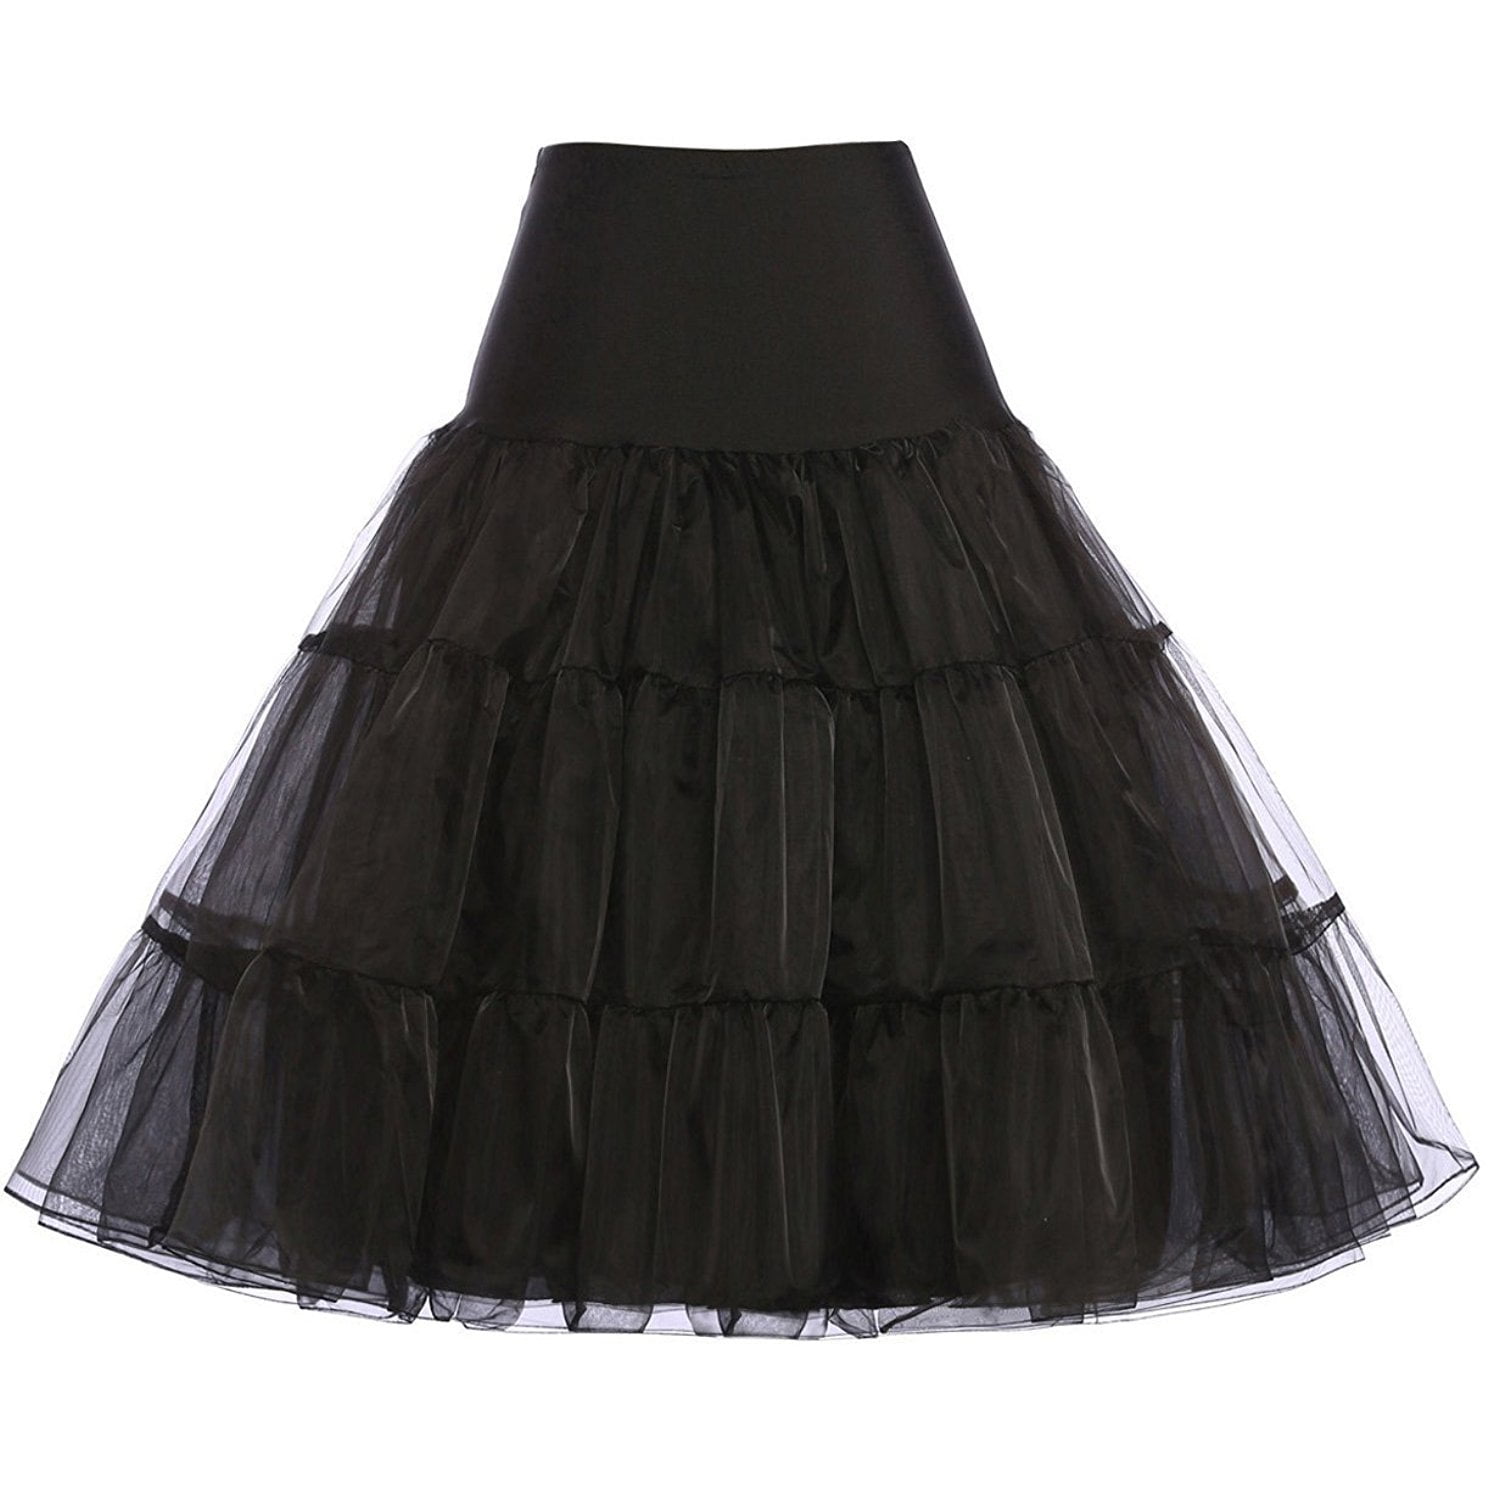 Retro Short Petticoat Women Net Rockabilly White/Black Underskirt Skirt Slips 